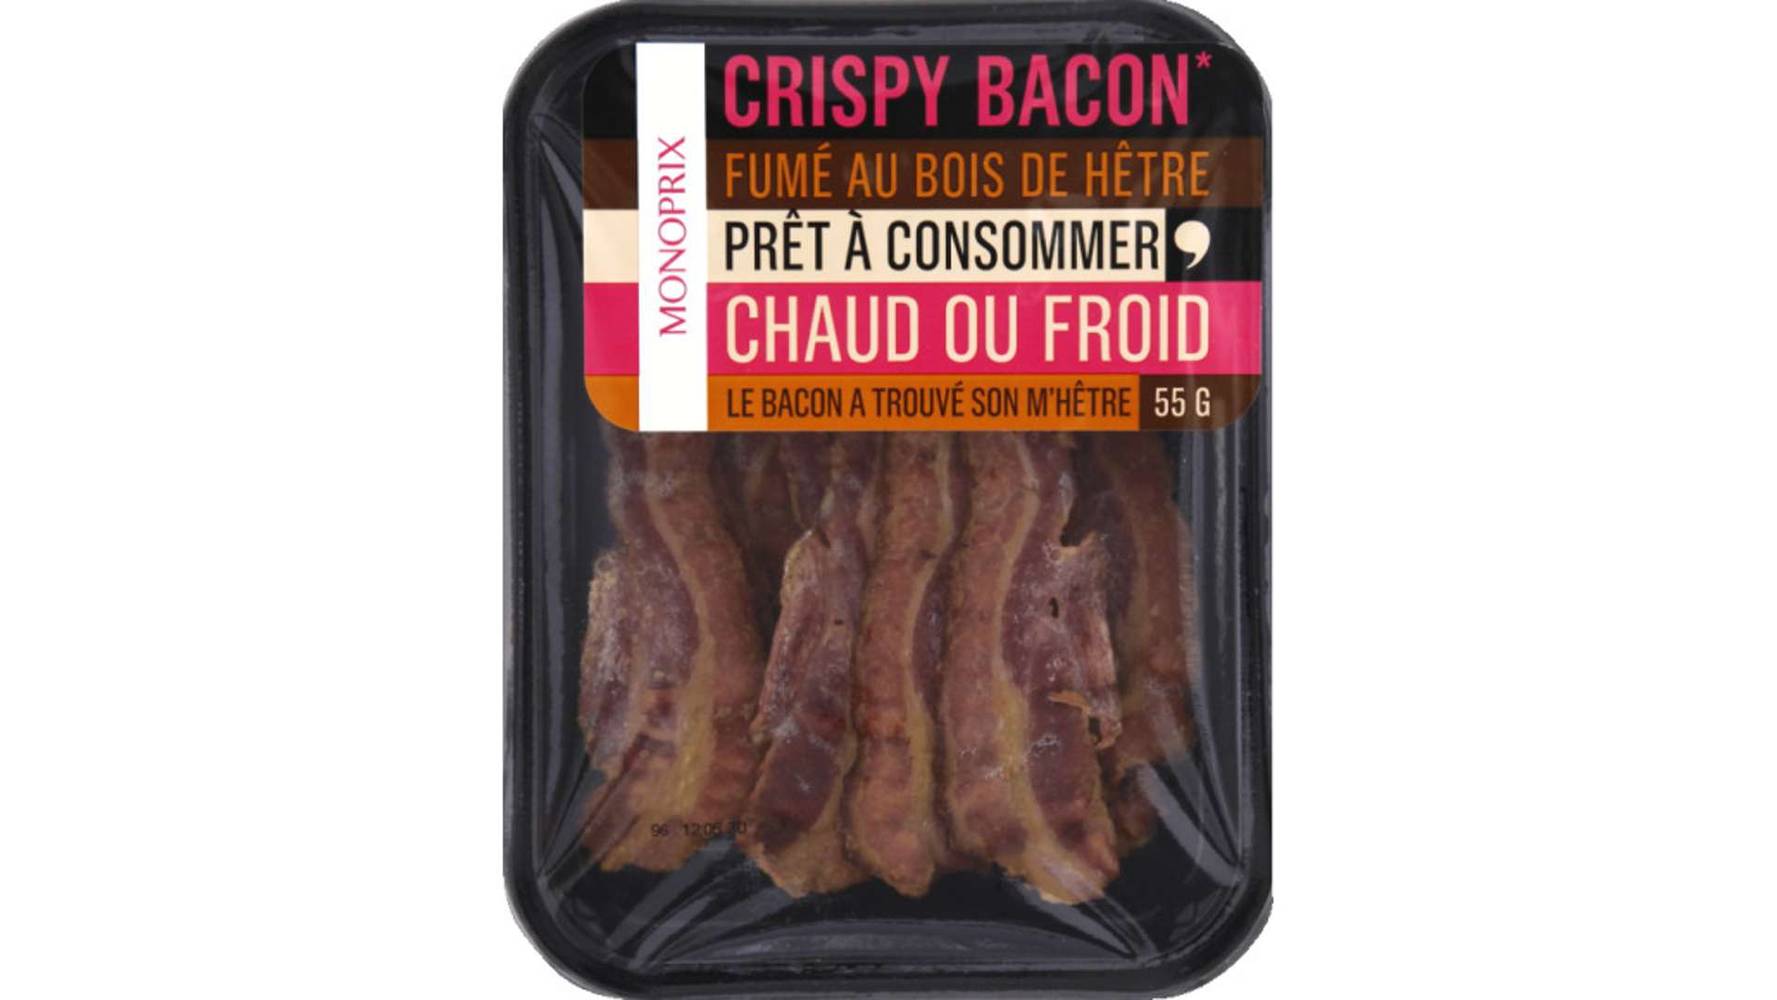 Monoprix Crispy bacon fumé au bois de hêtre prêt à consommer La barquette de 55 g